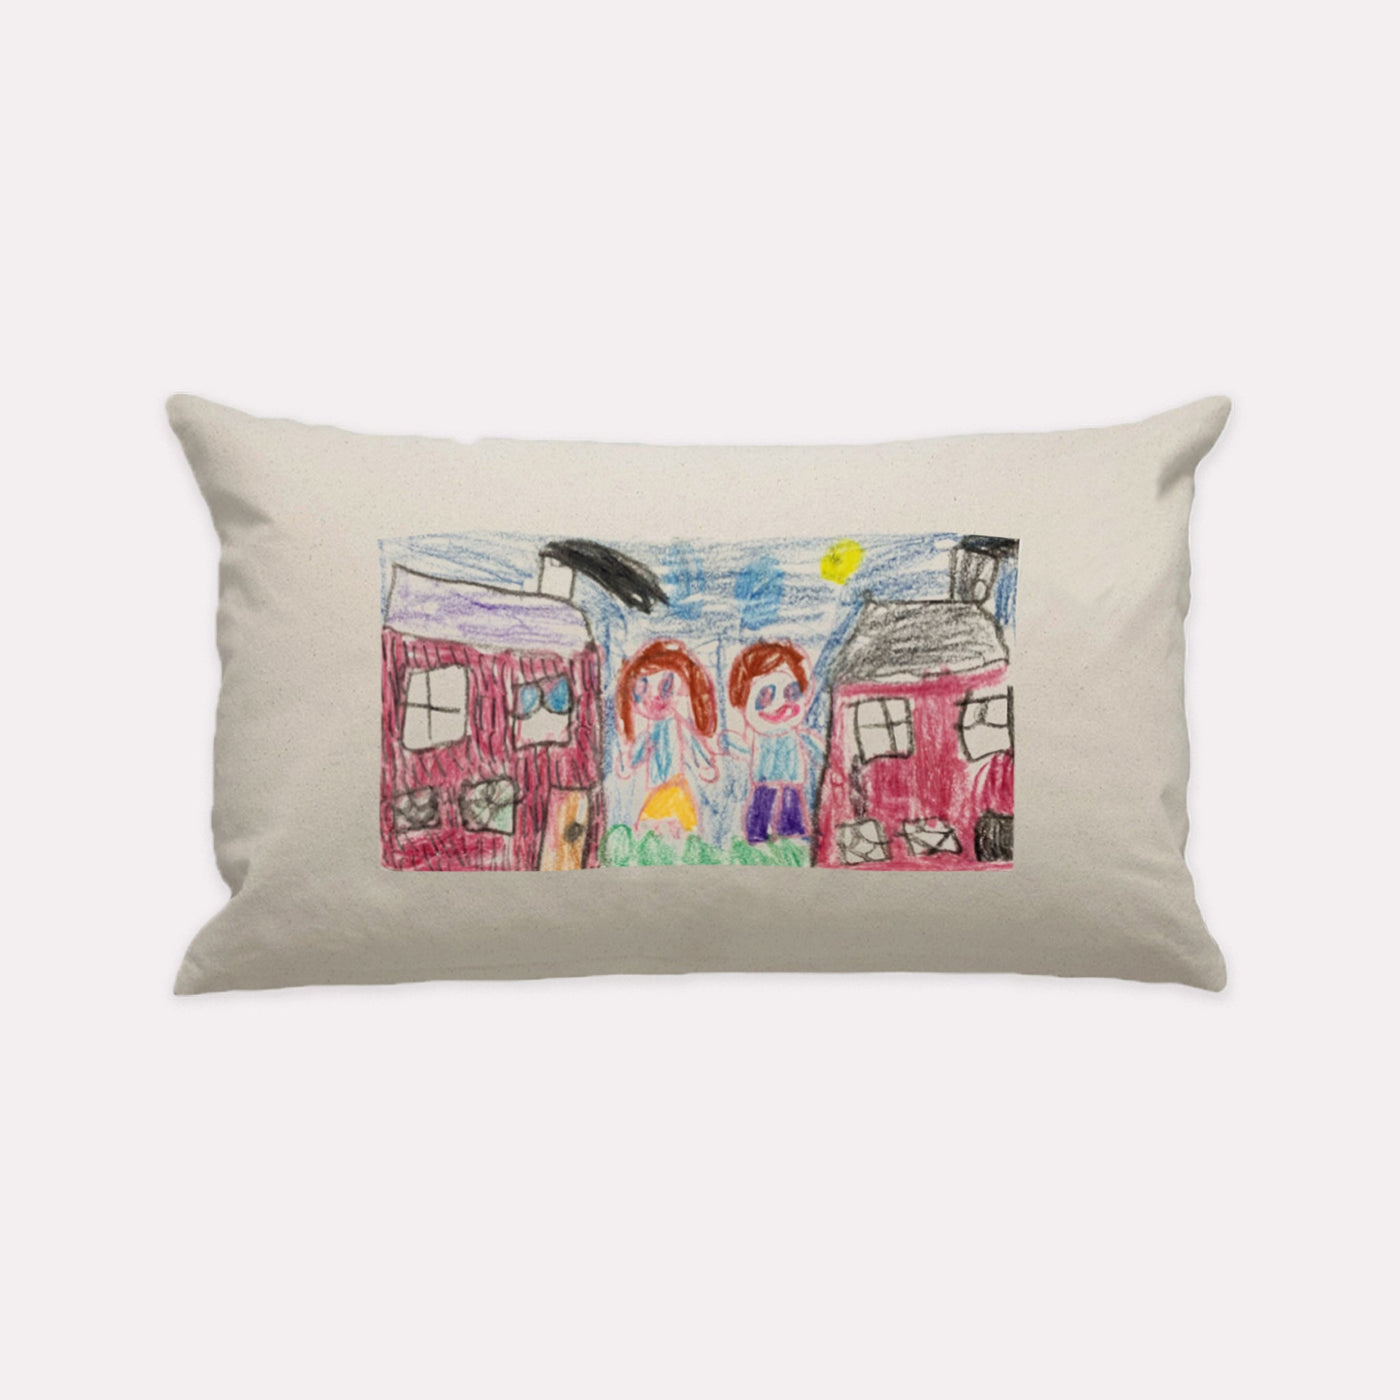 Natural Custom Kids Artwork Lumbar Pillow - The Printed Gift